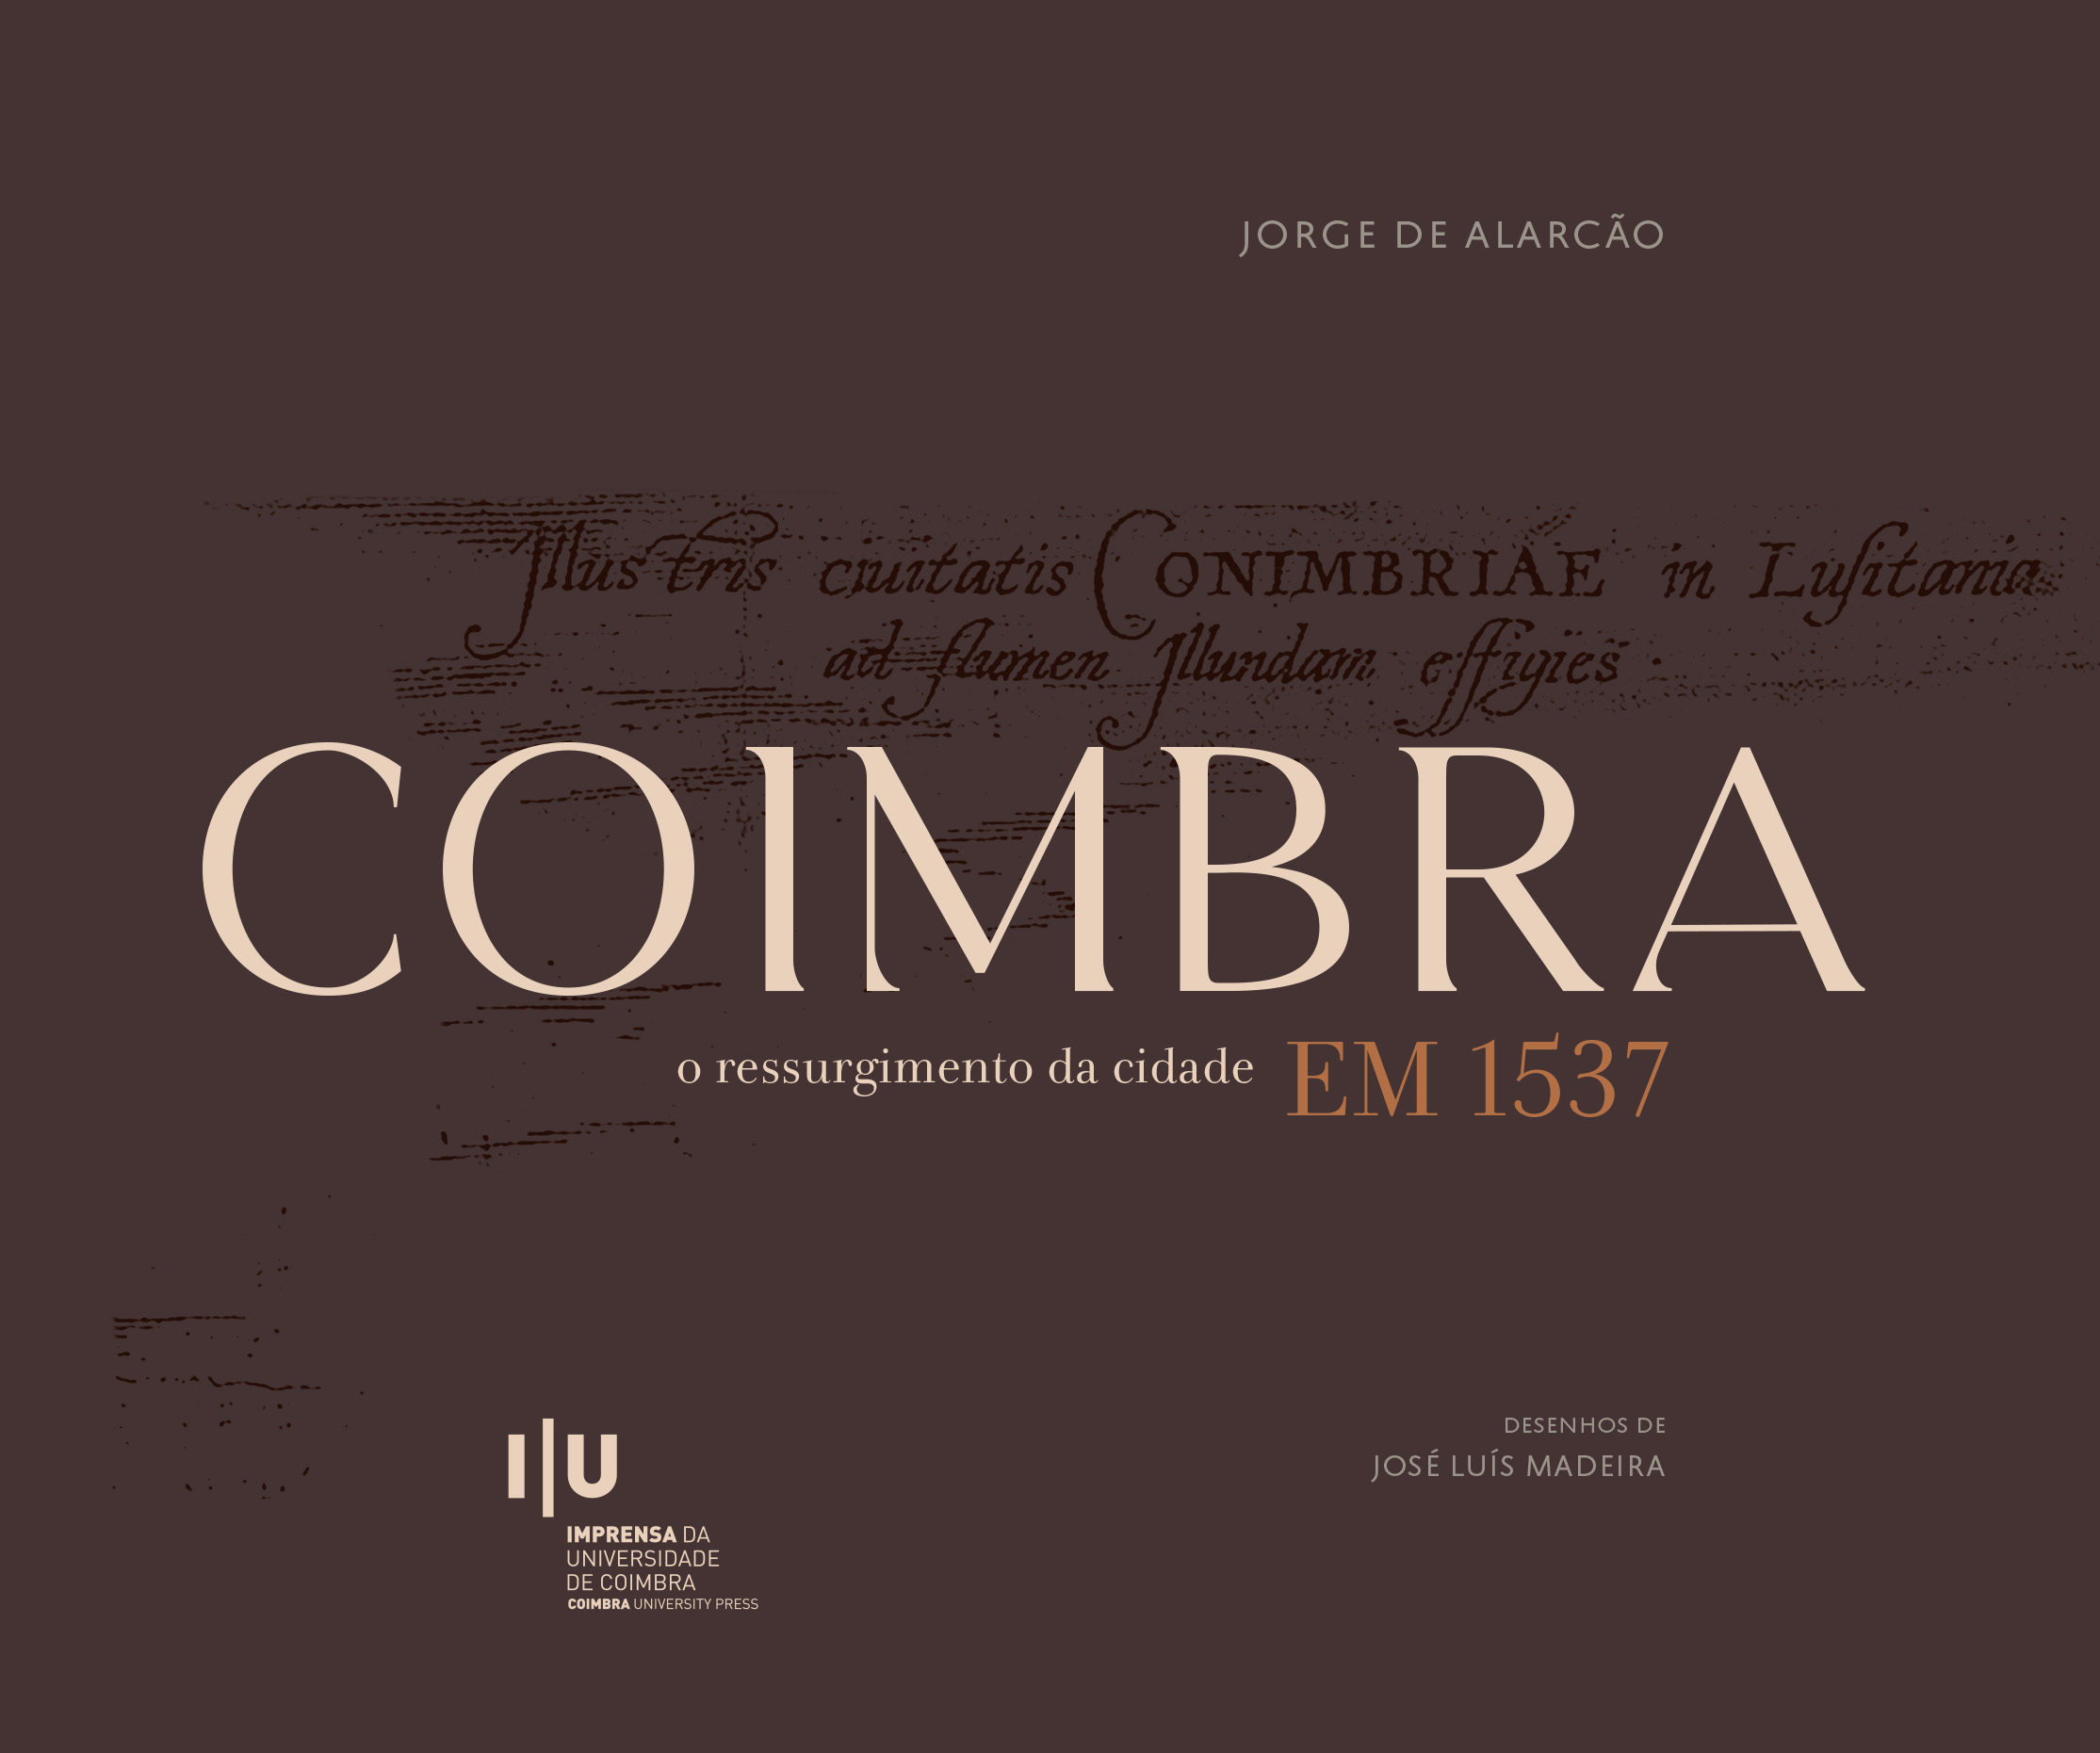 COIMBRA, o ressurgimento da Cidade em 1537 - Imprensa da Universidade de Coimbra (IUC)